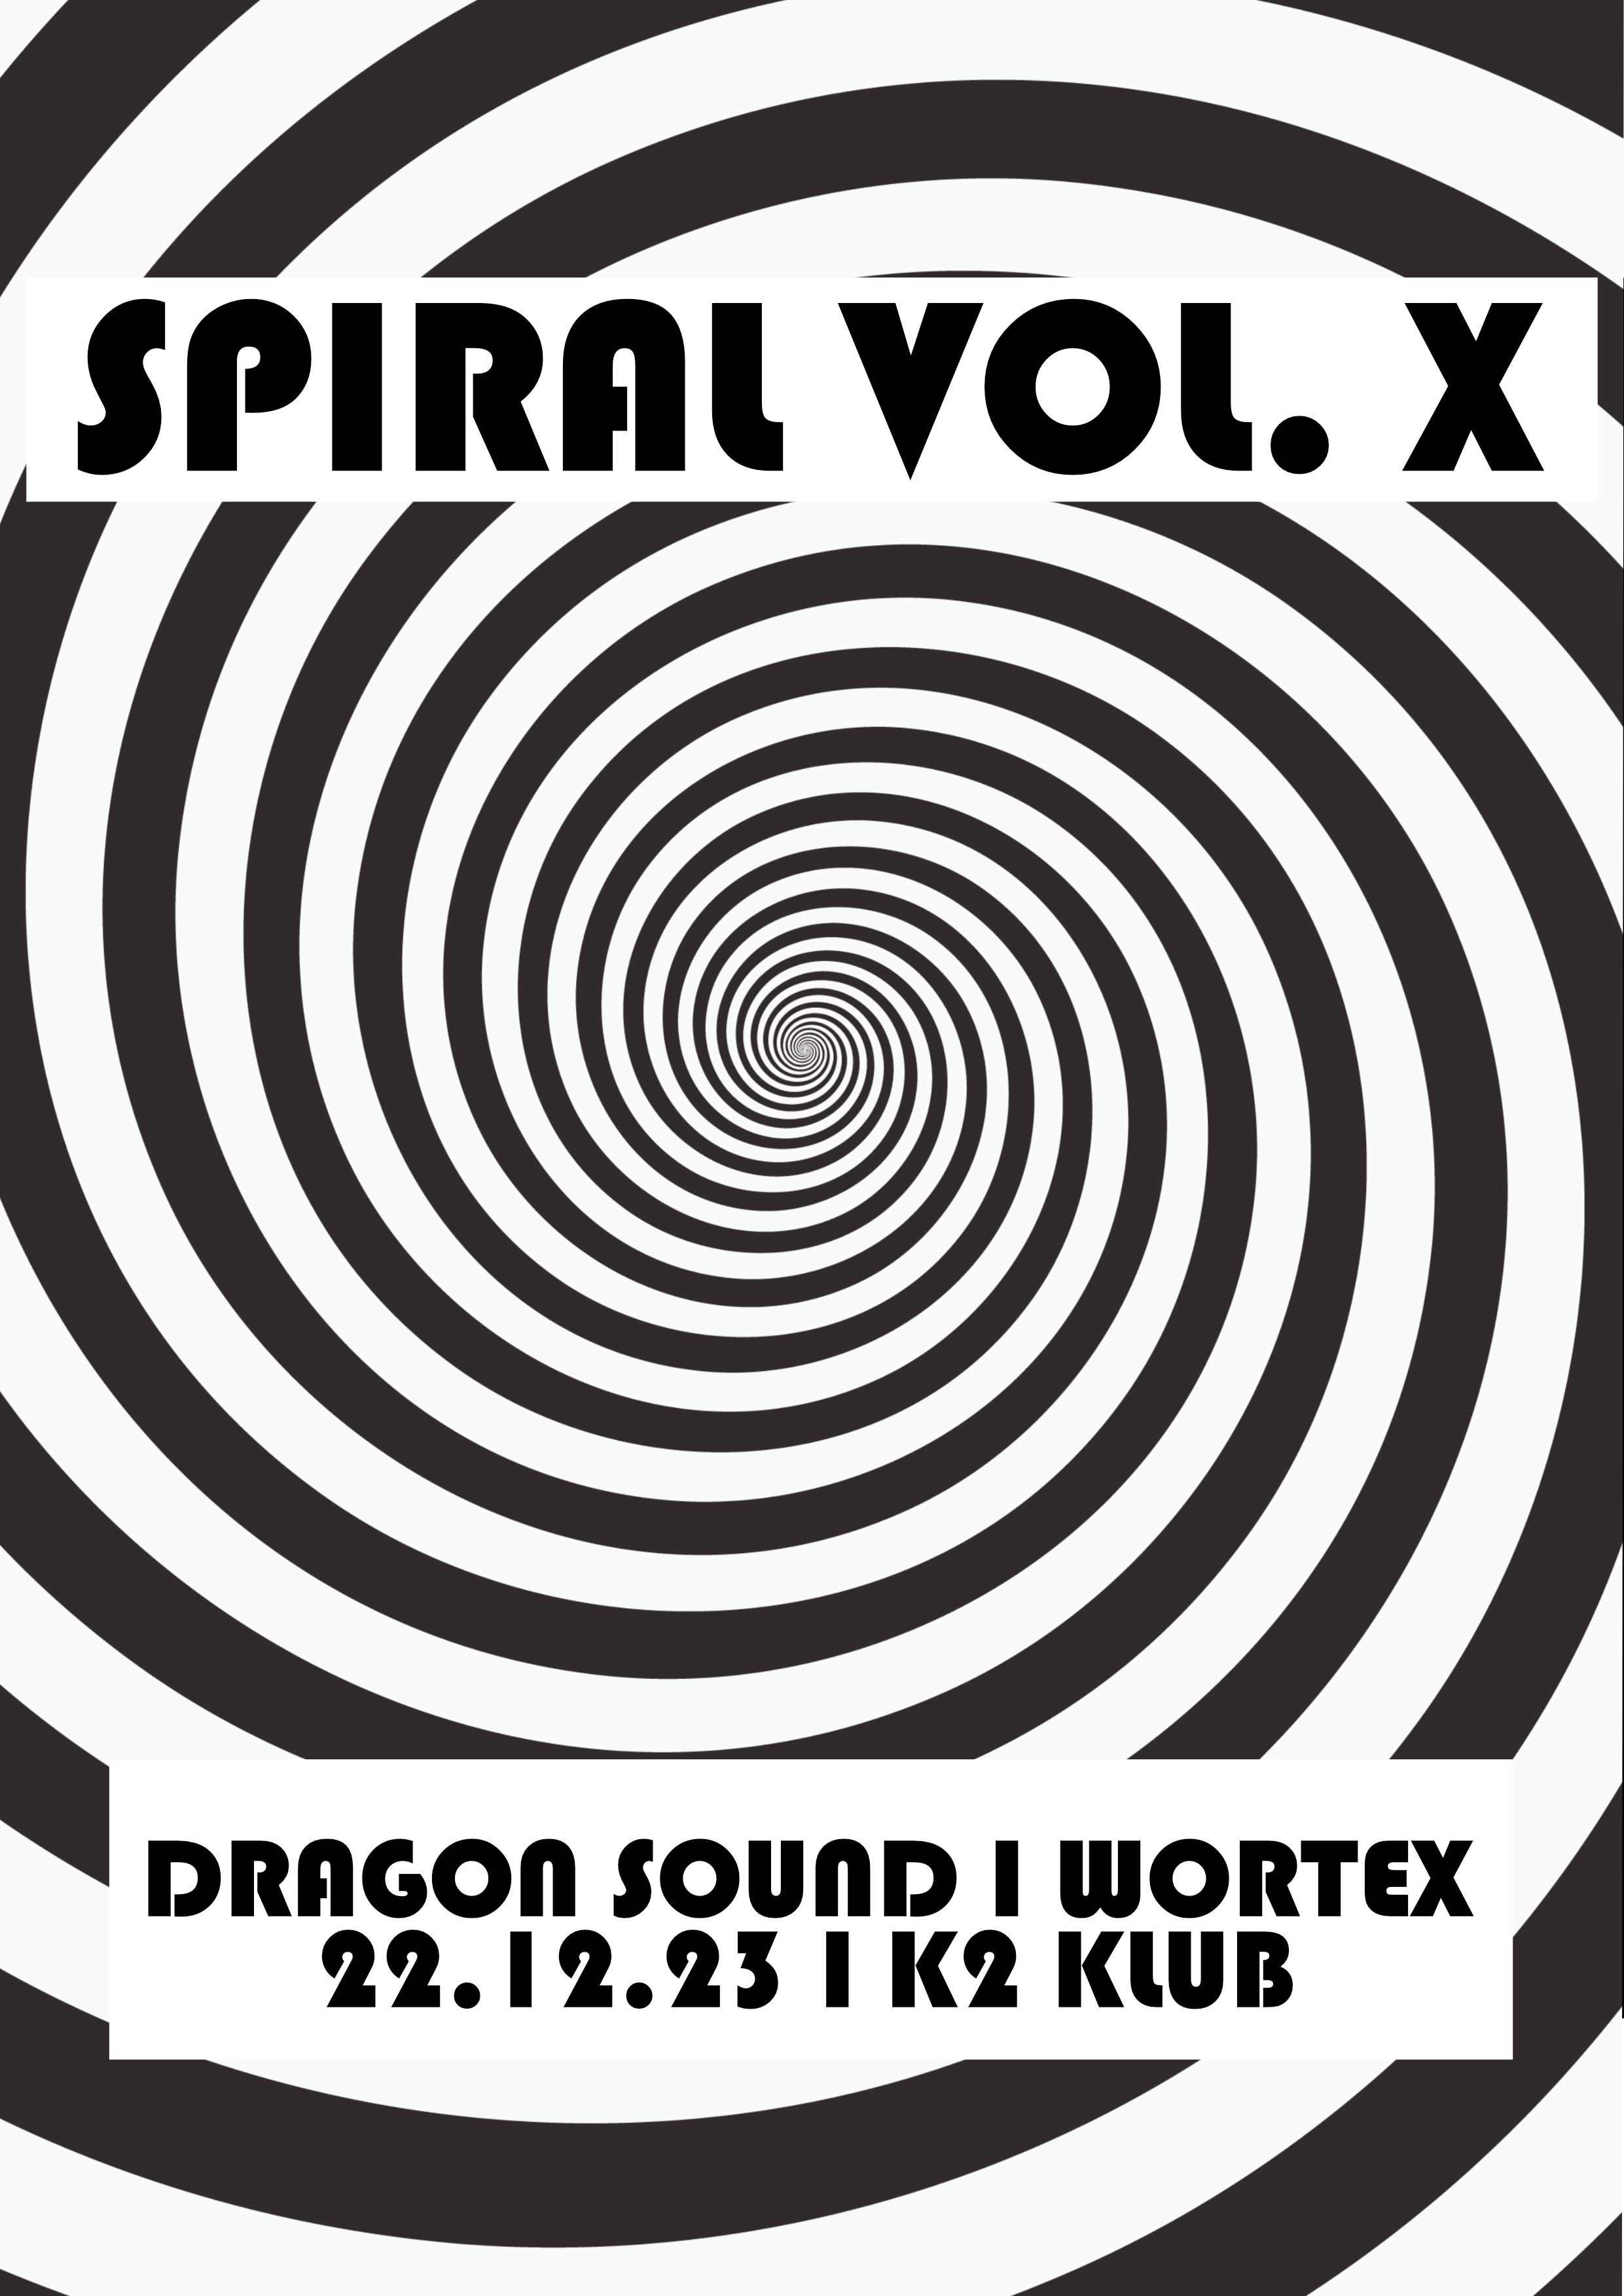 Spiral vol. X Dragon Sound & Wortex